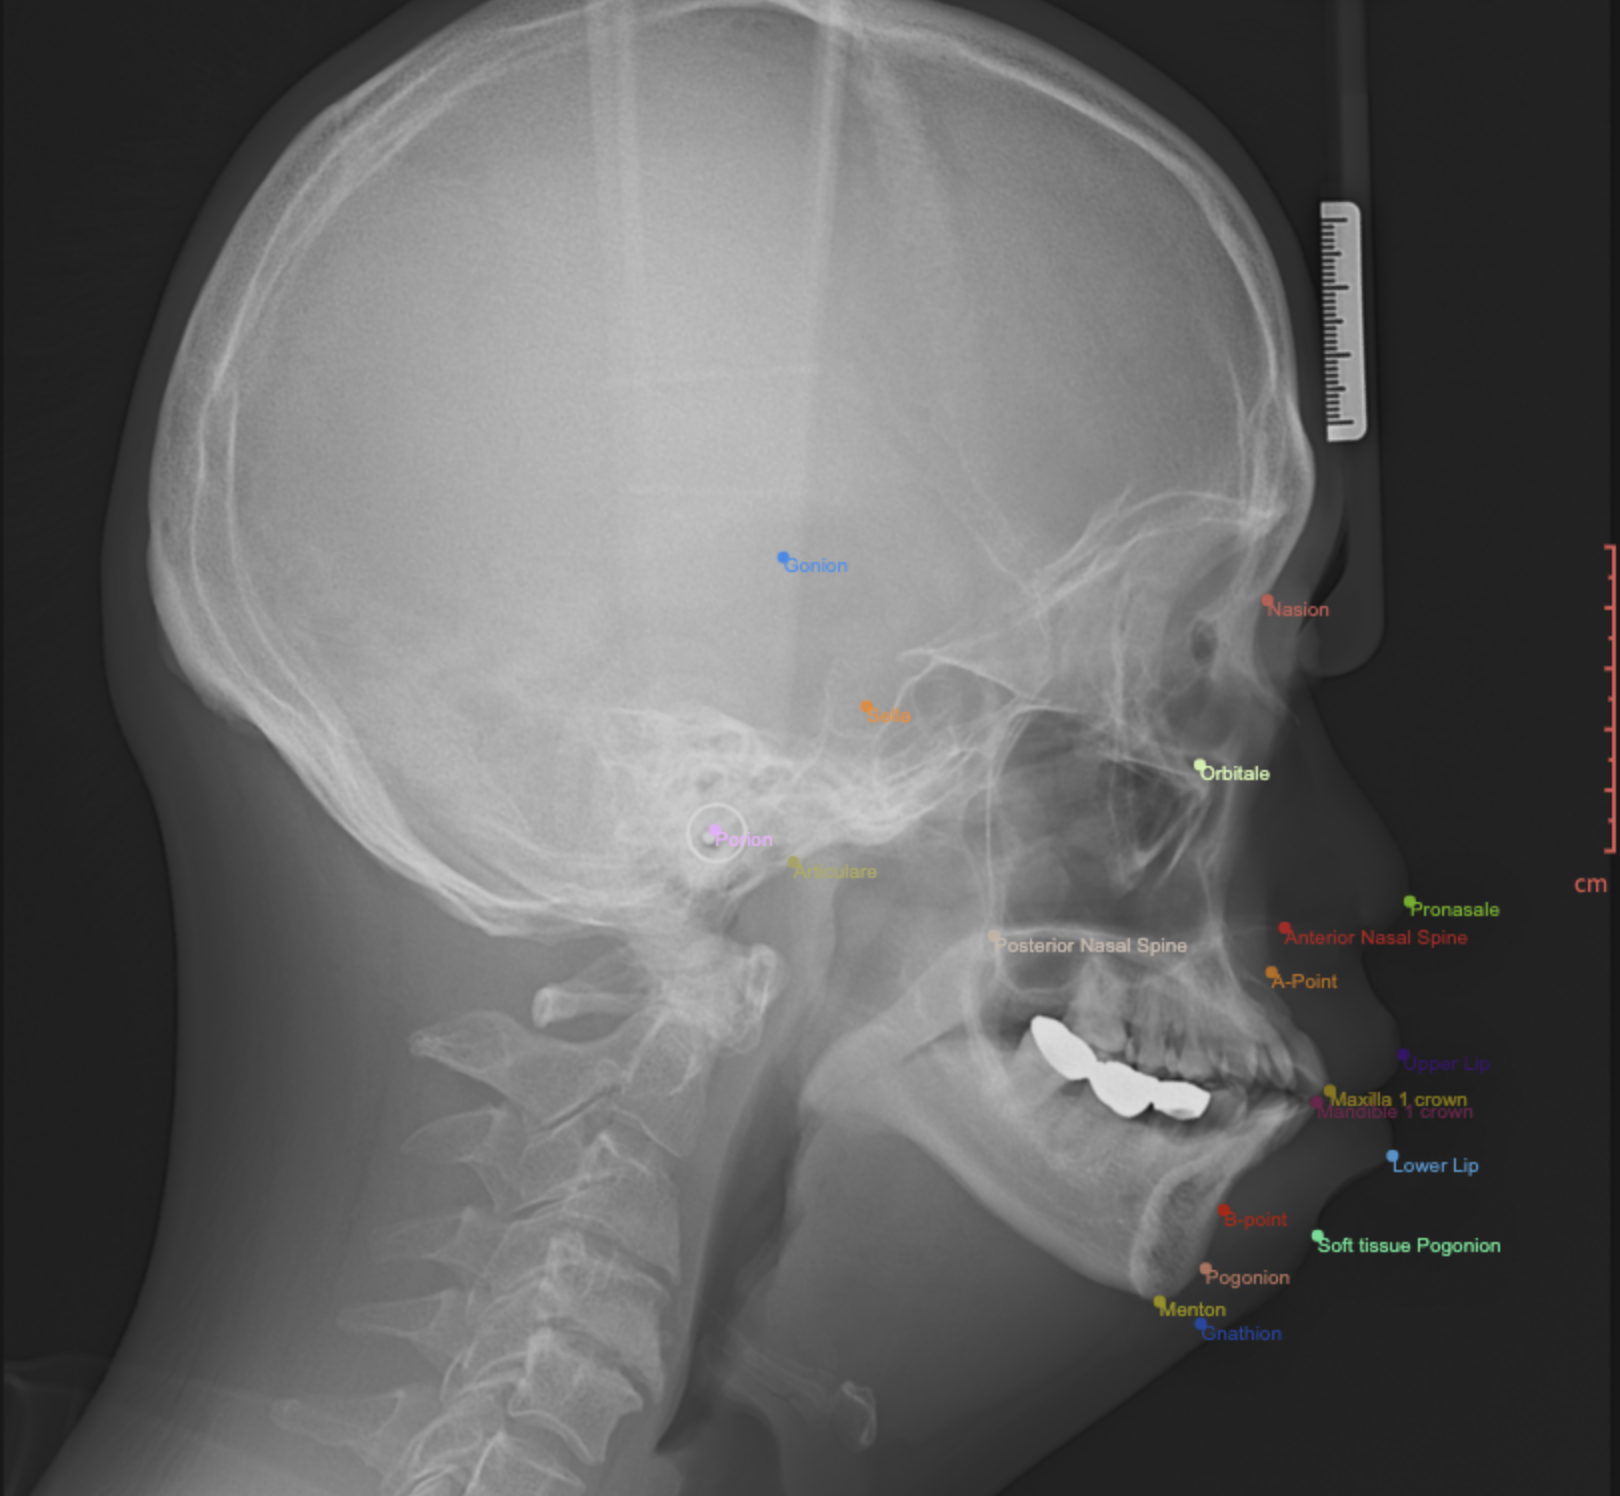 측면두부규격방사선사진(cephalography)-어노테이션 표시 예시 이미지